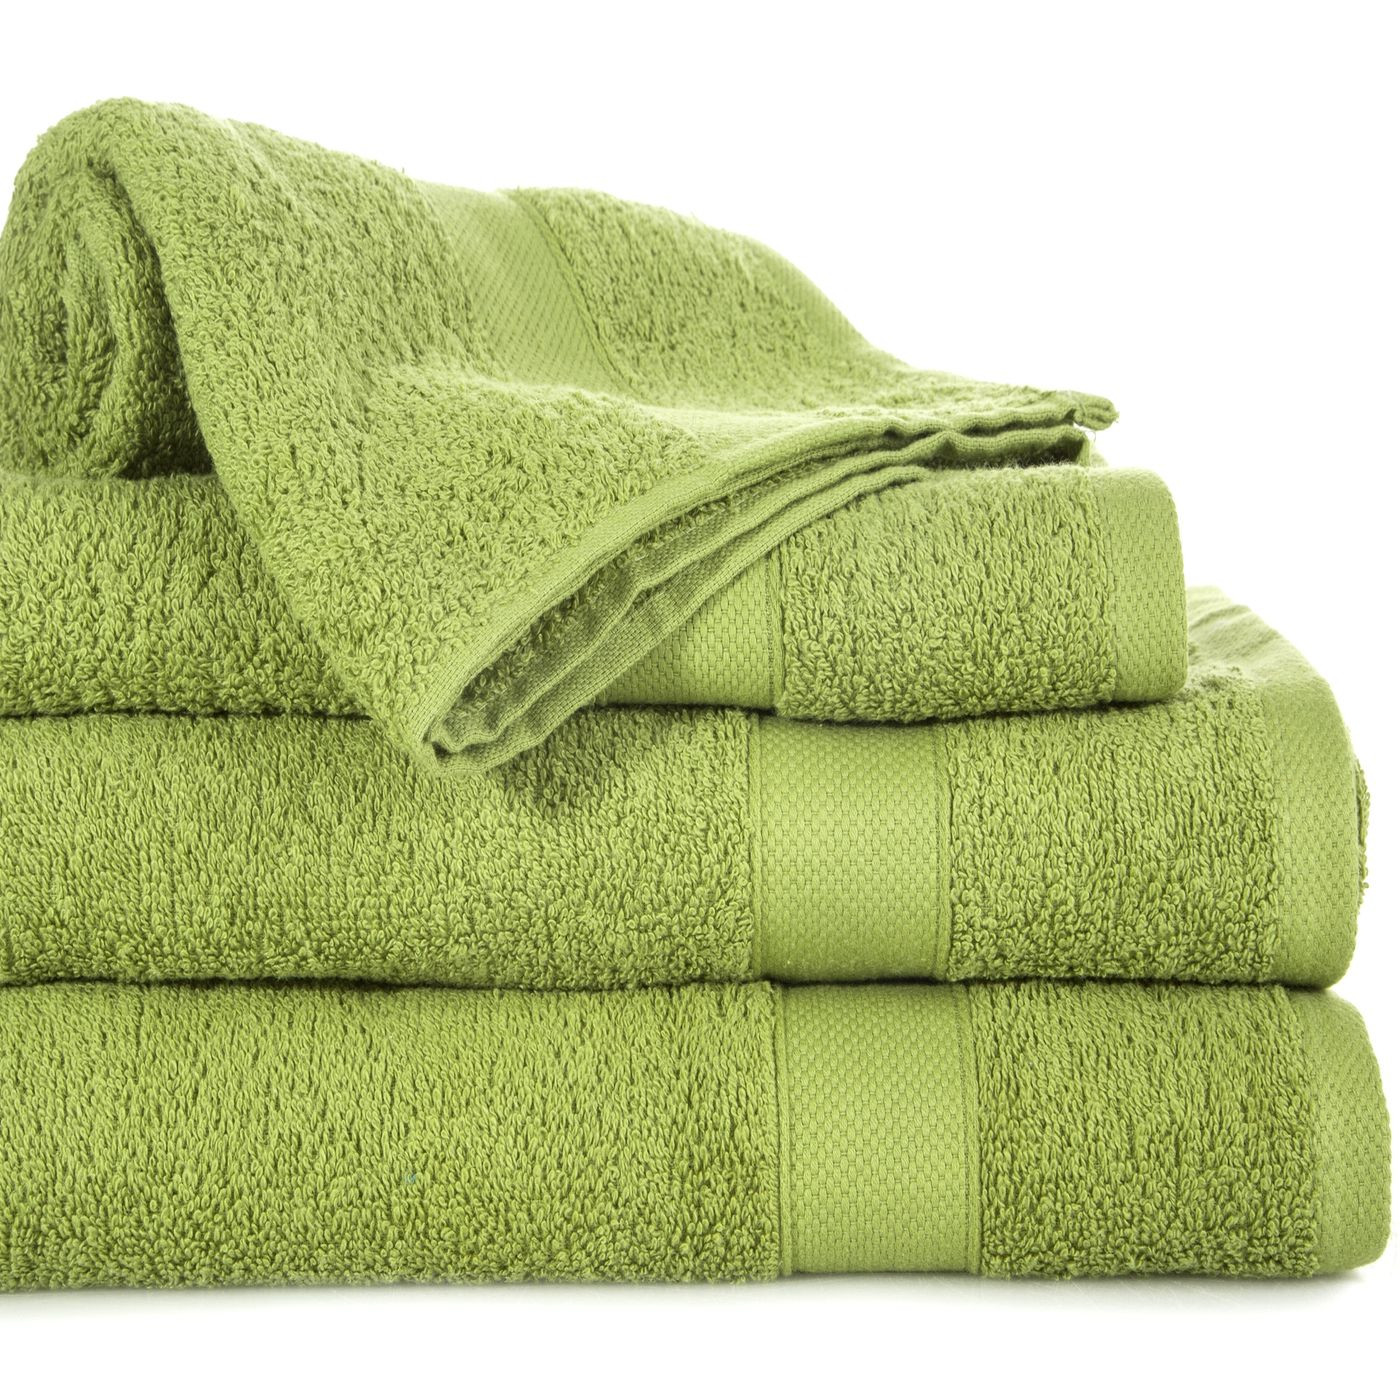 Miękki chłonny ręcznik kąpielowy oliwkowy 50x90